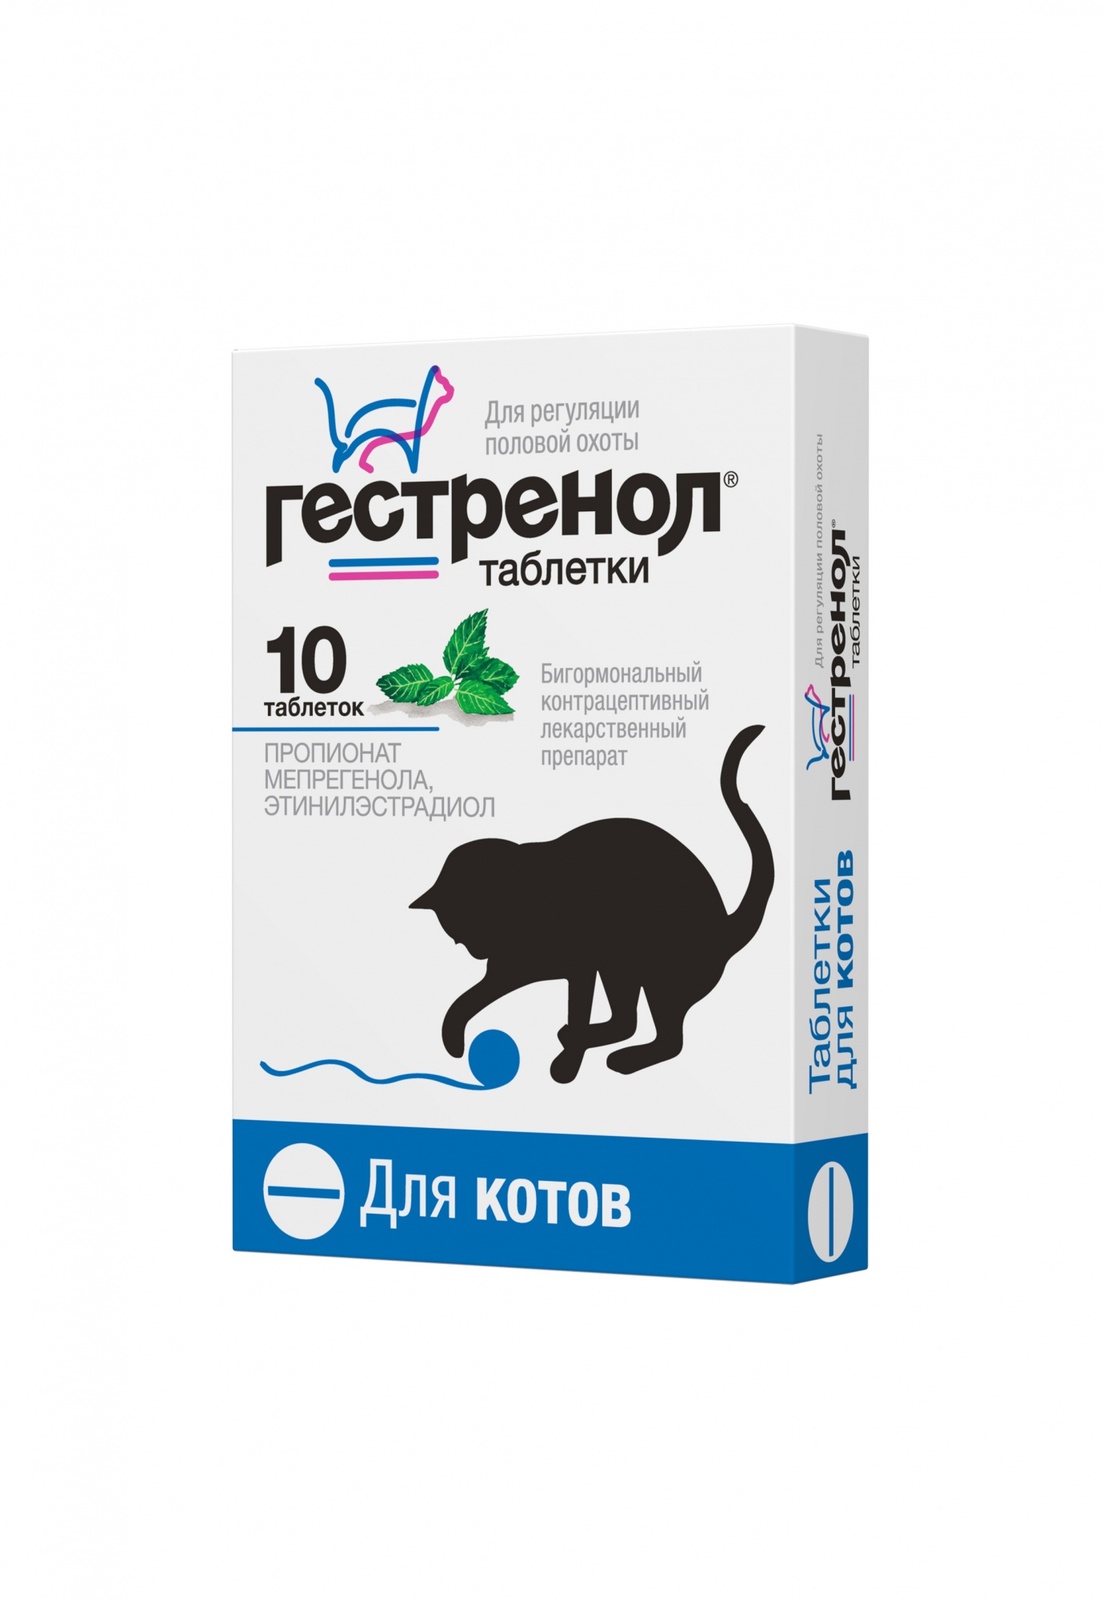 Астрафарм Астрафарм гестренол таблетки для котов для регуляции половой охоты, 10 таб. (7 г) гестренол таблетки для котов 10шт